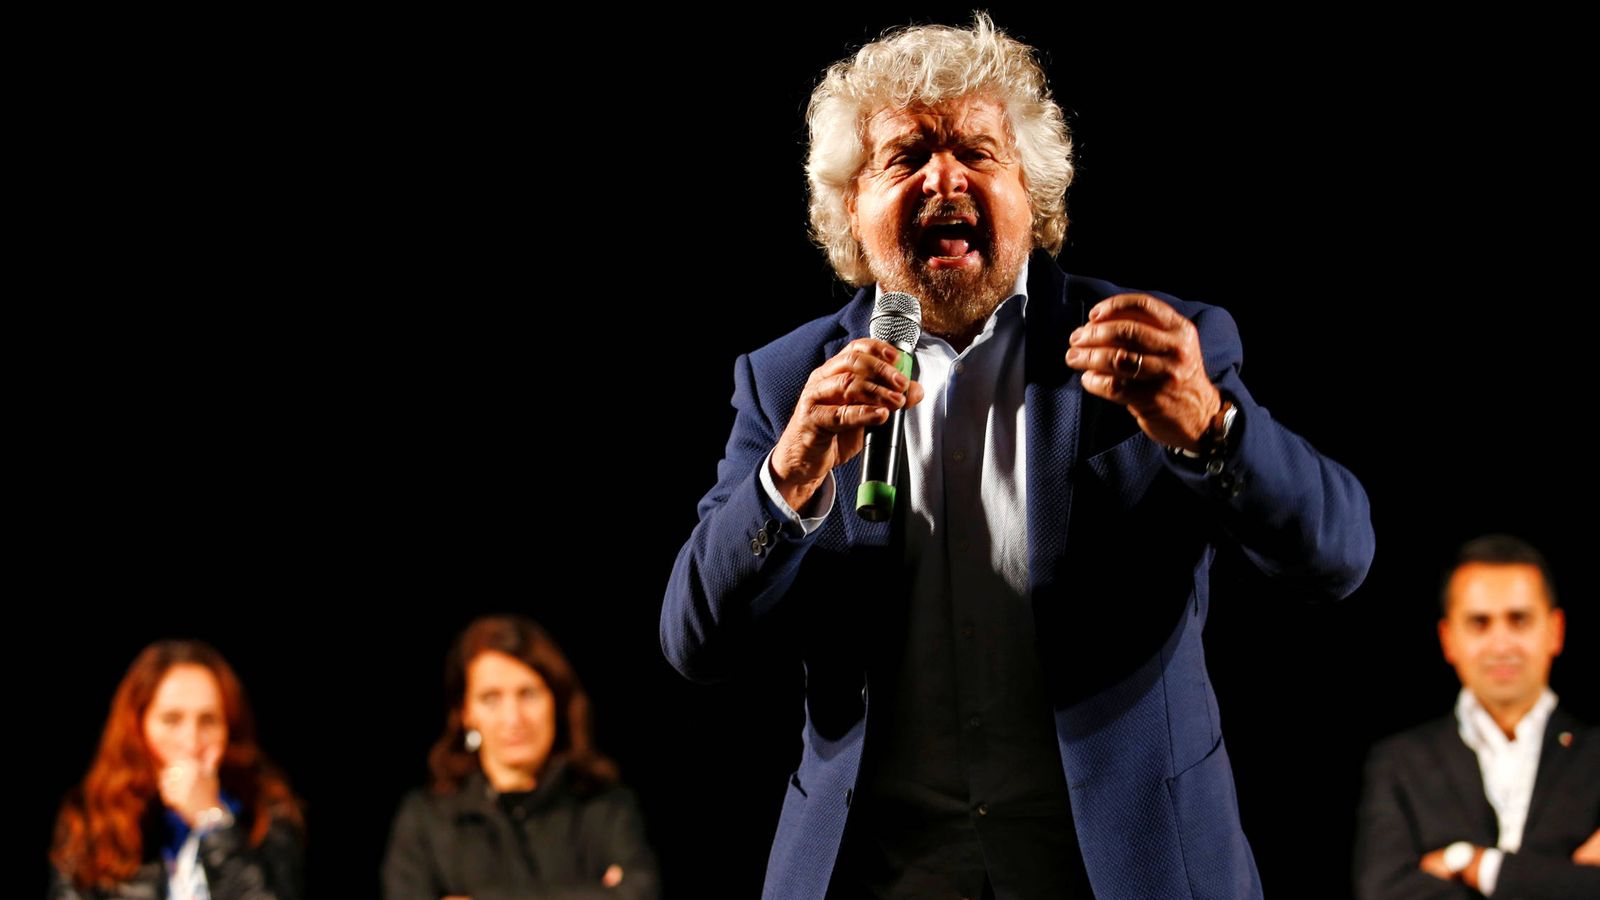 Foto: Beppe Grillo, fundador y líder del Movimiento 5 Estrellas, durante un evento a favor del No en el referéndum, en Roma (Reuters).